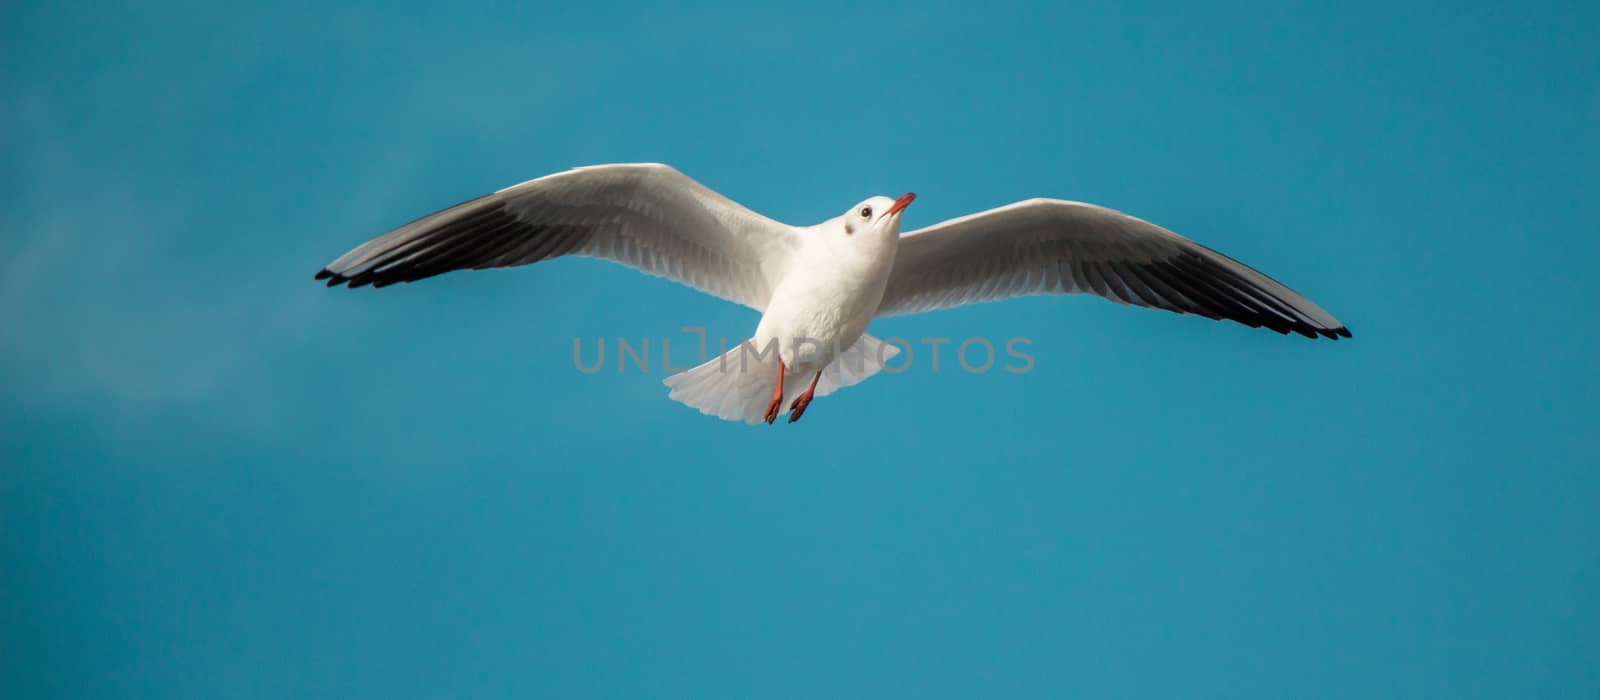 Seagull flying in blue  sky  by berkay